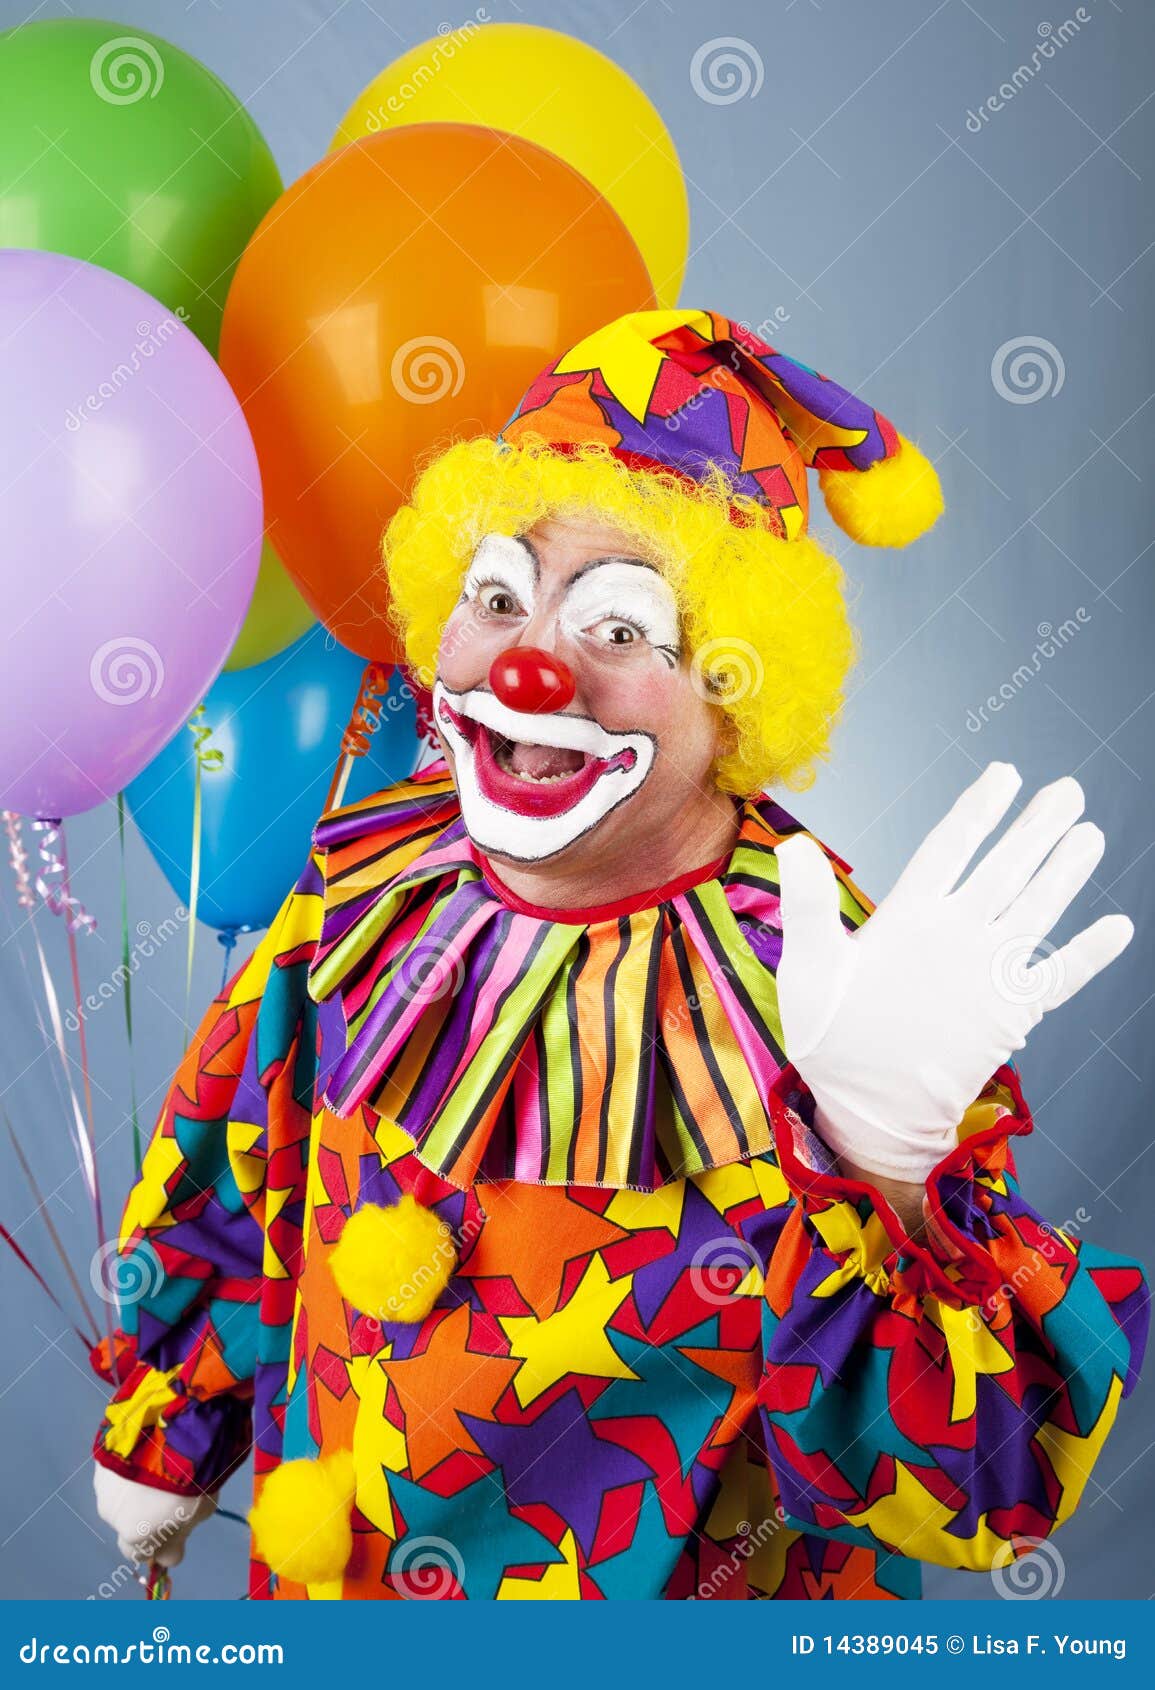 photo libre de droits ondes de clown de cirque bonjour image